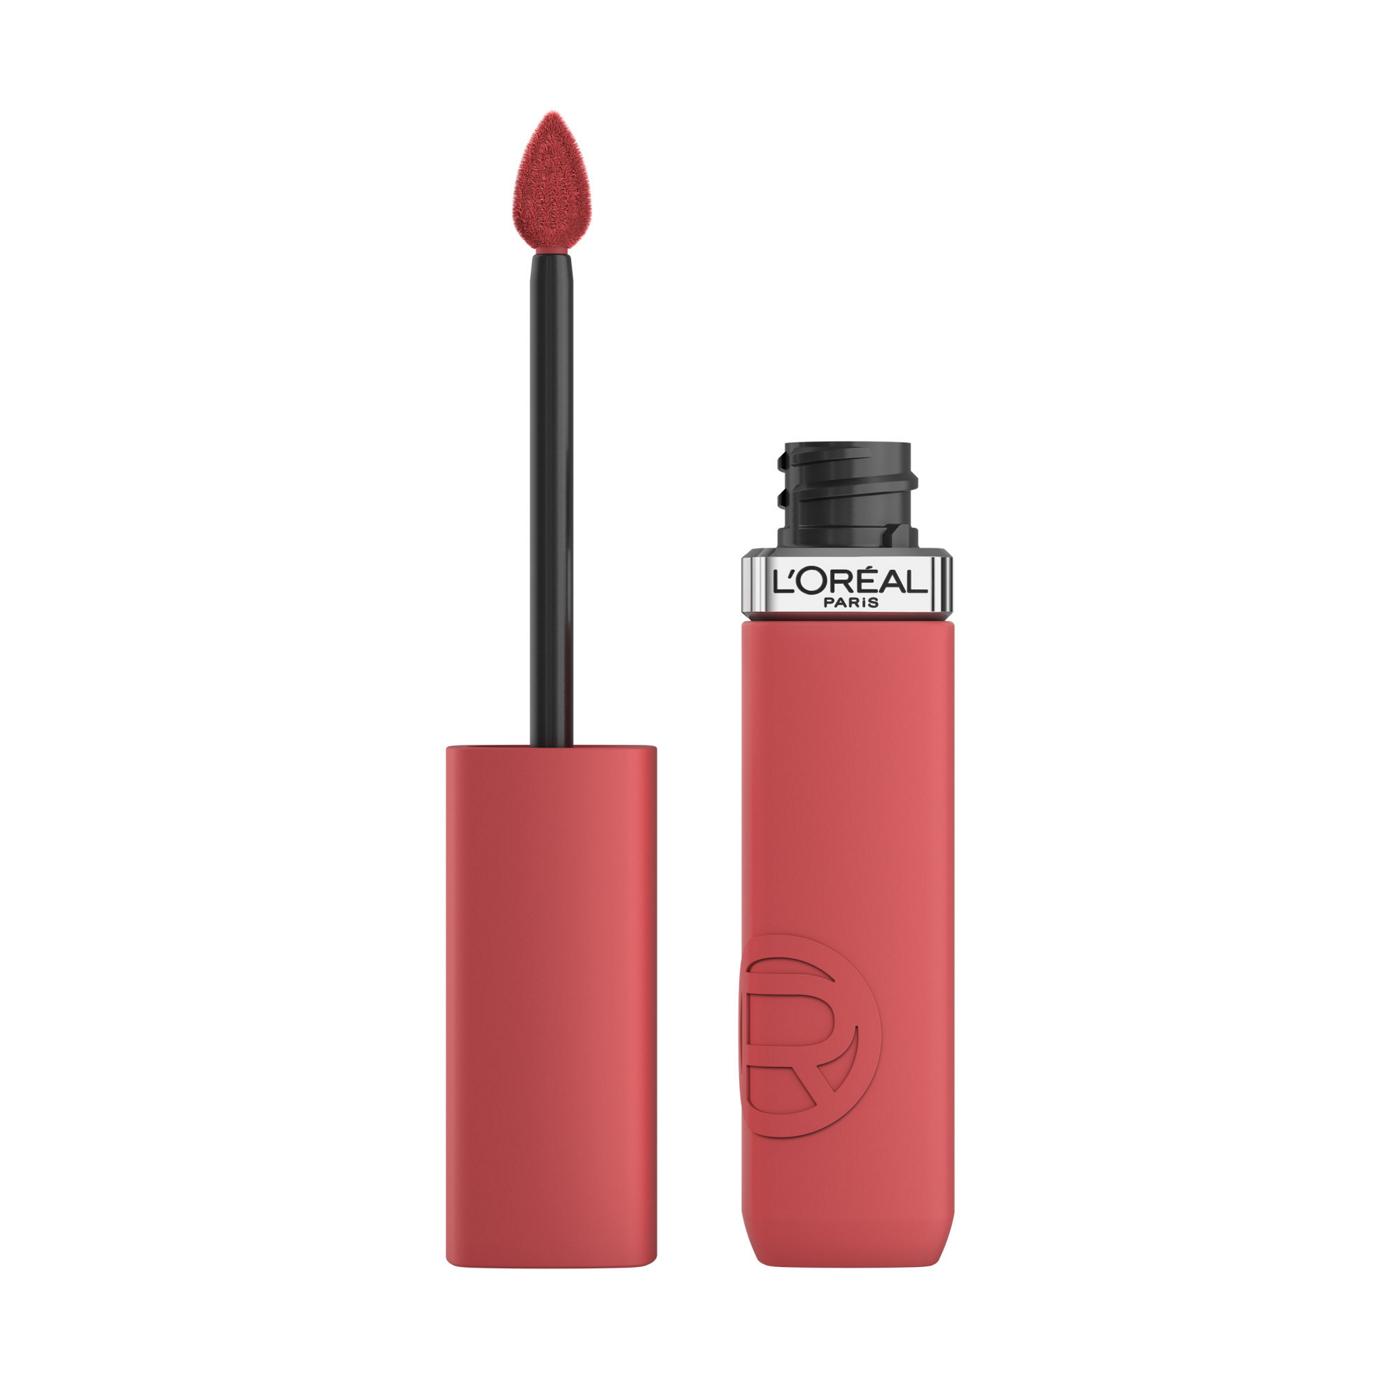 L'Oréal Paris Infallible Le Matte Resistance Liquid Lipstick - Shopping Spree; image 1 of 6